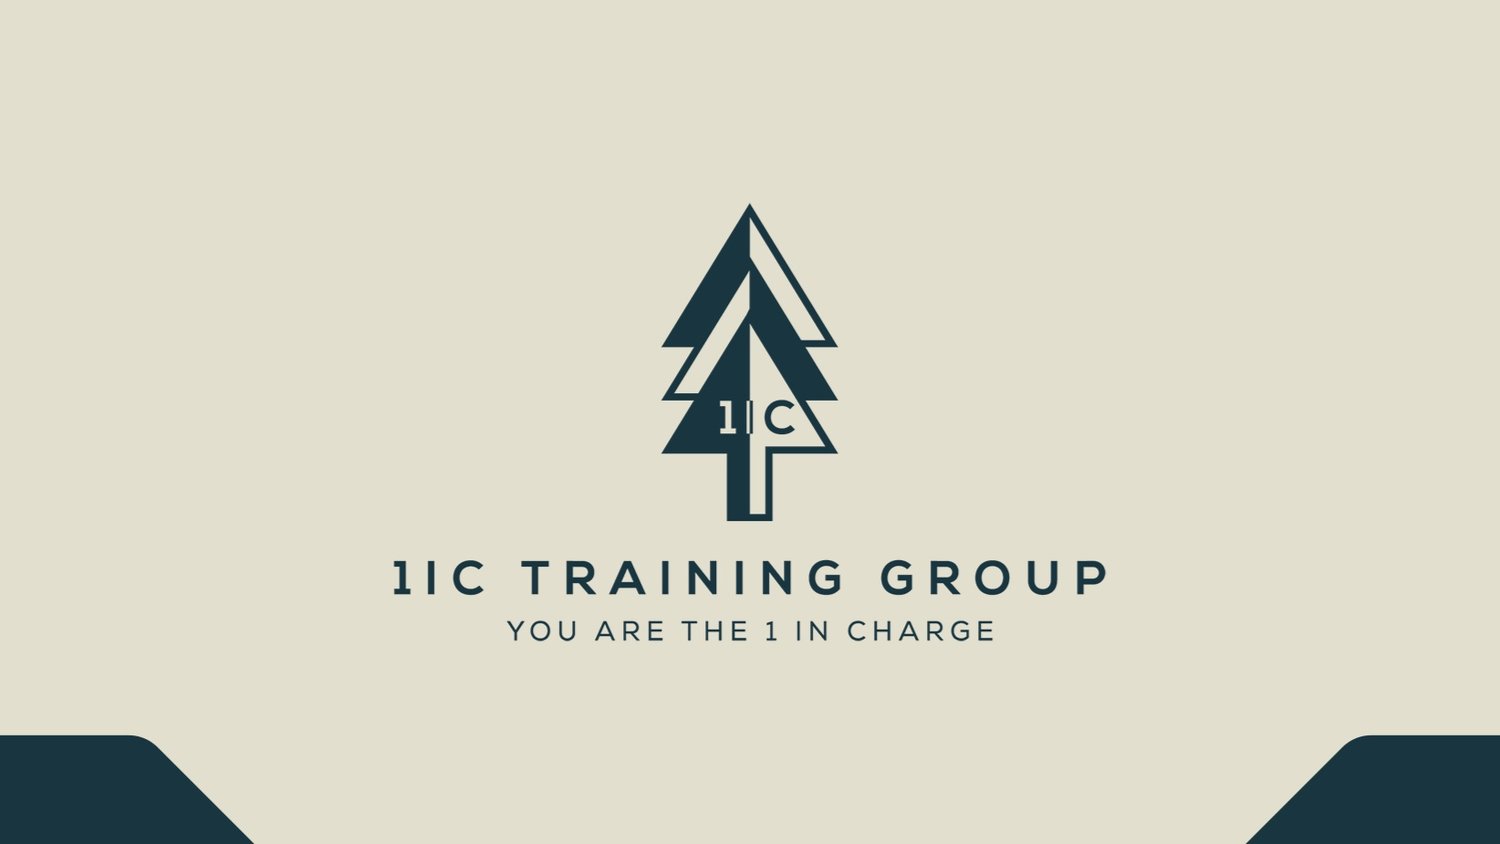 1iC Training Group